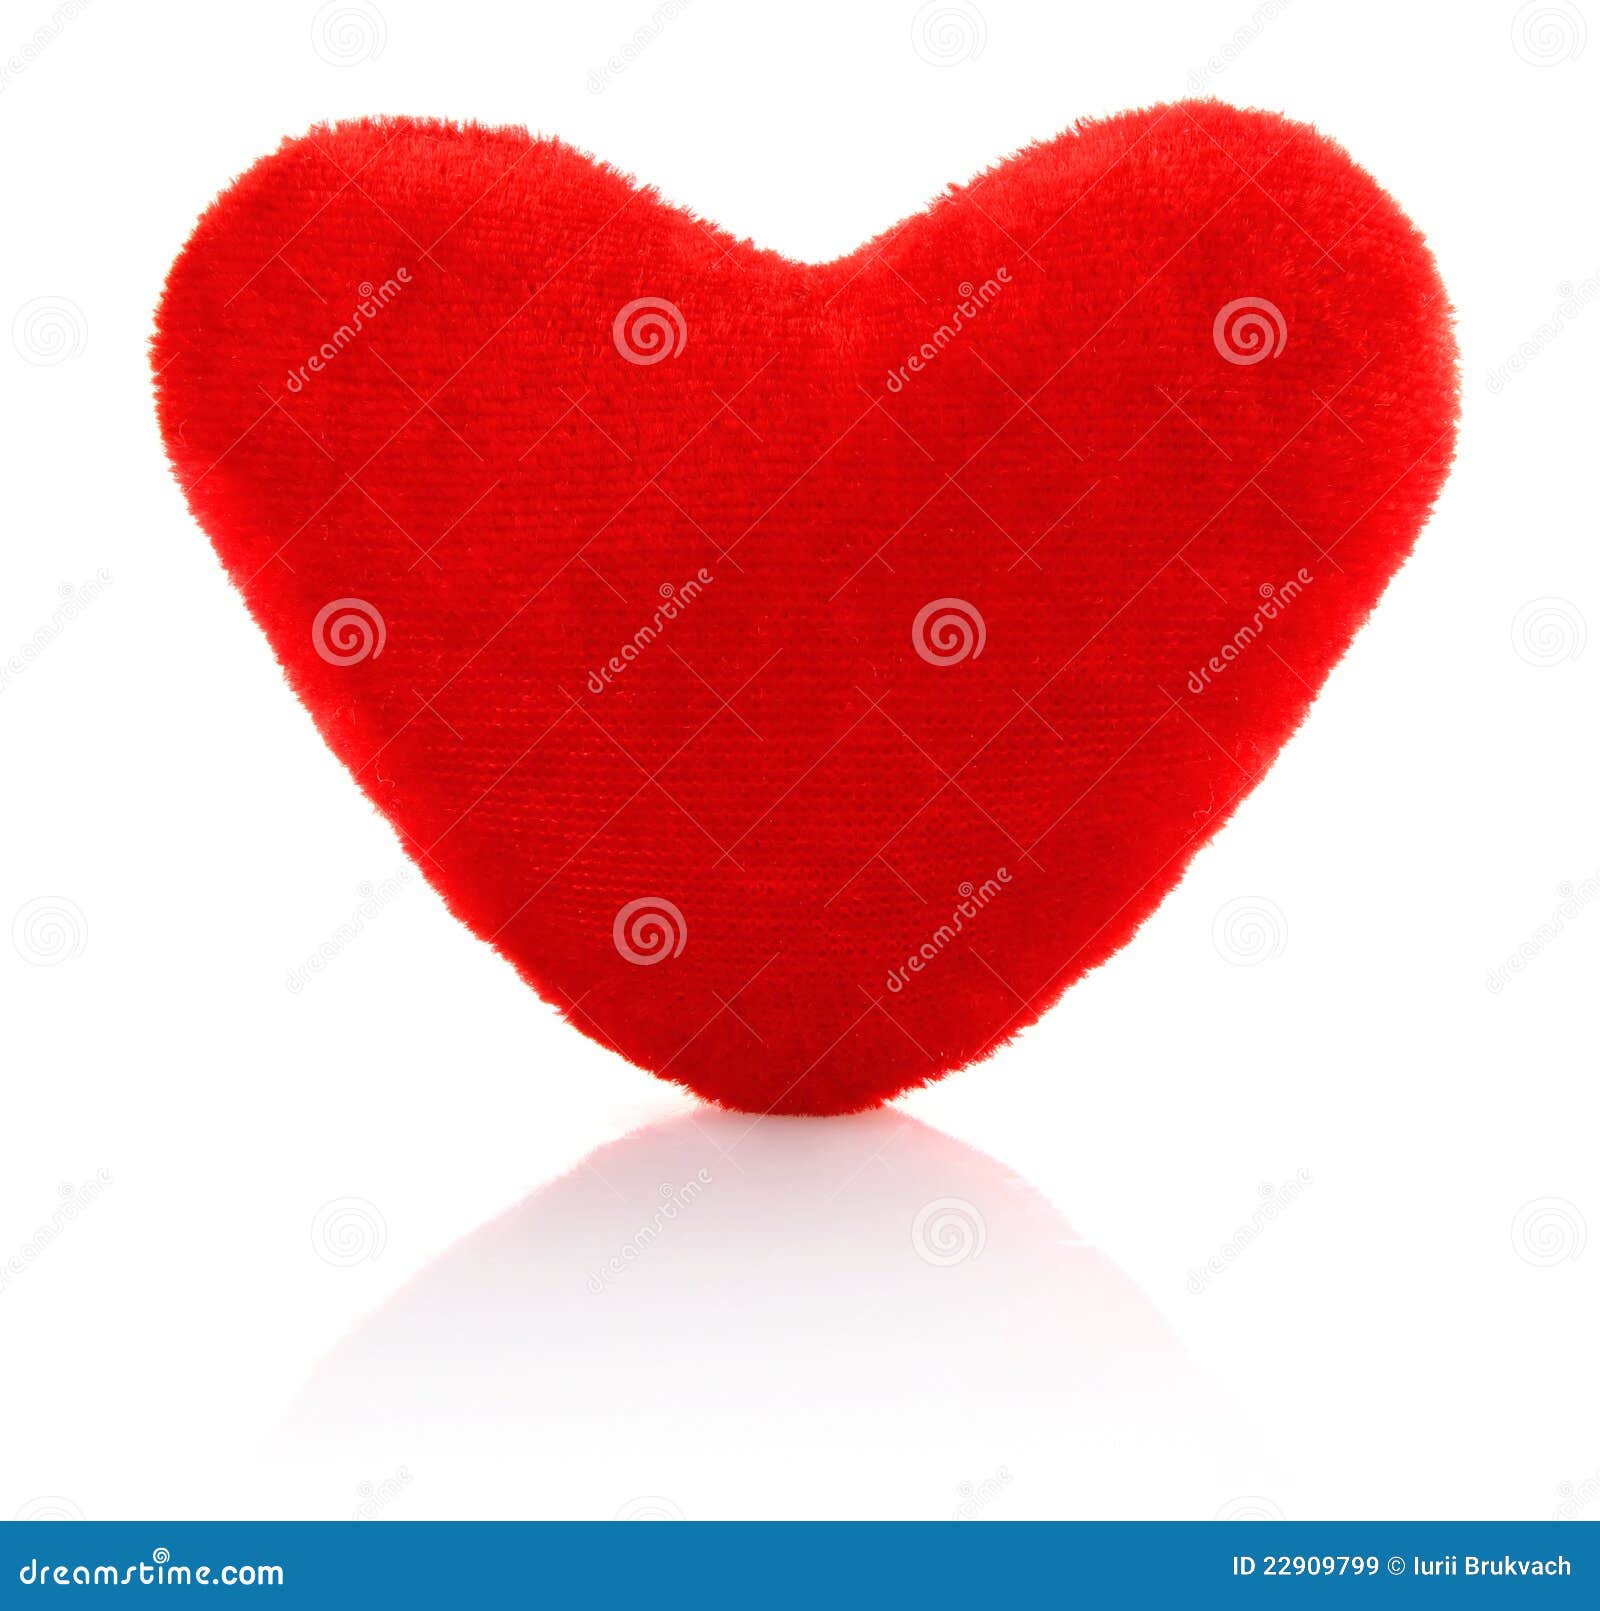 velvety toy heart